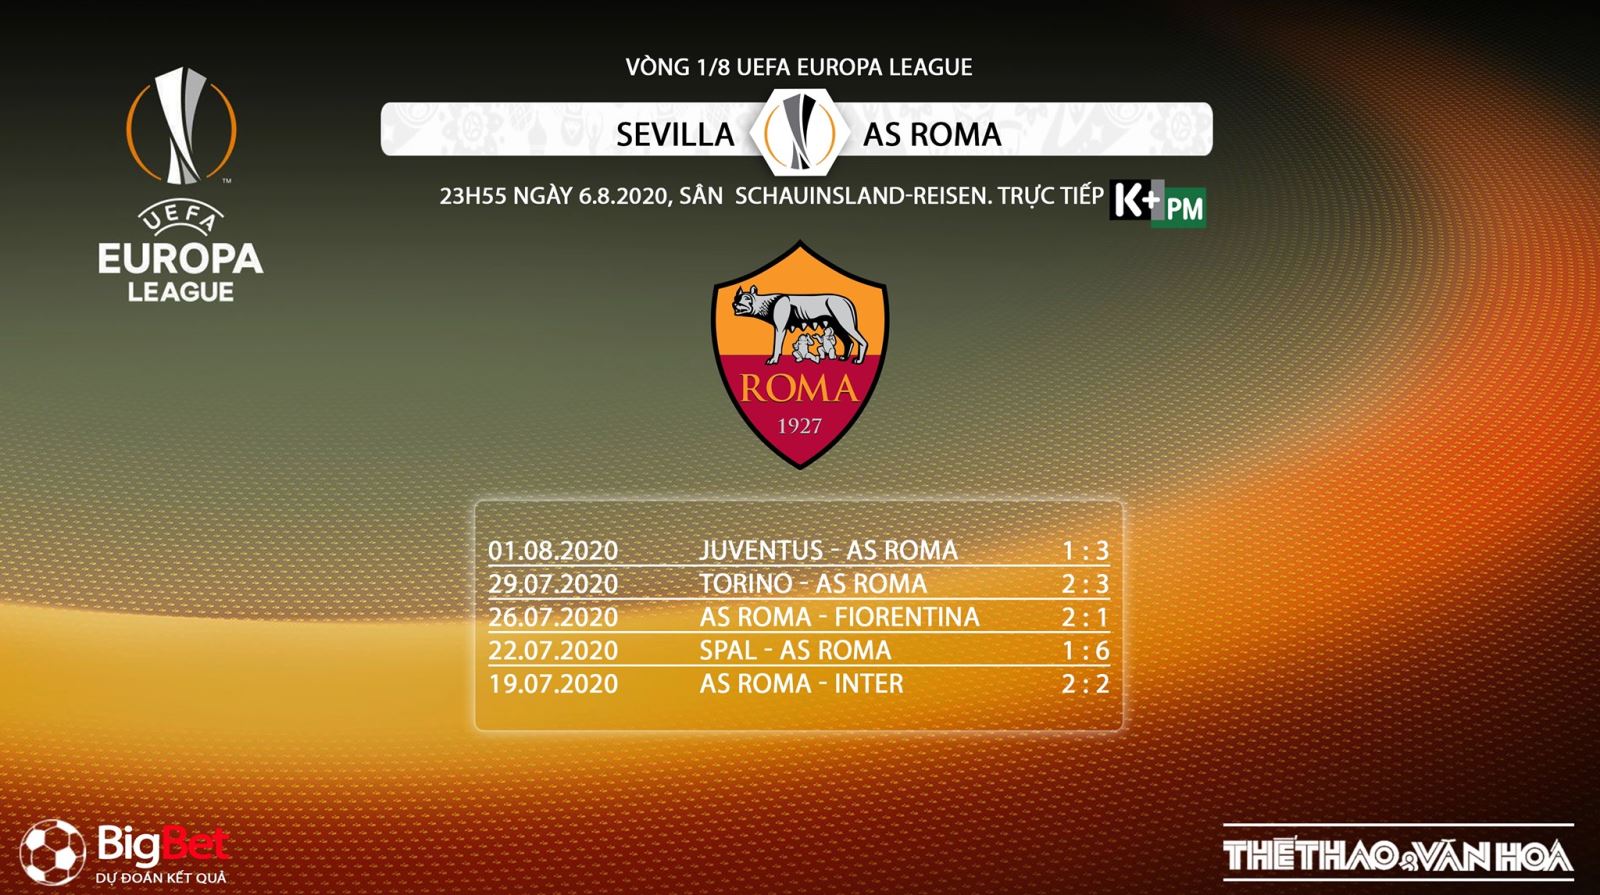 Sevilla vs Roma, soi kèo Sevilla vs Roma, kèo bóng đá Sevilla vs Roma, kèo bóng đá, soi kèo, kèo bóng đá, trực tiếp Sevilla vs Roma